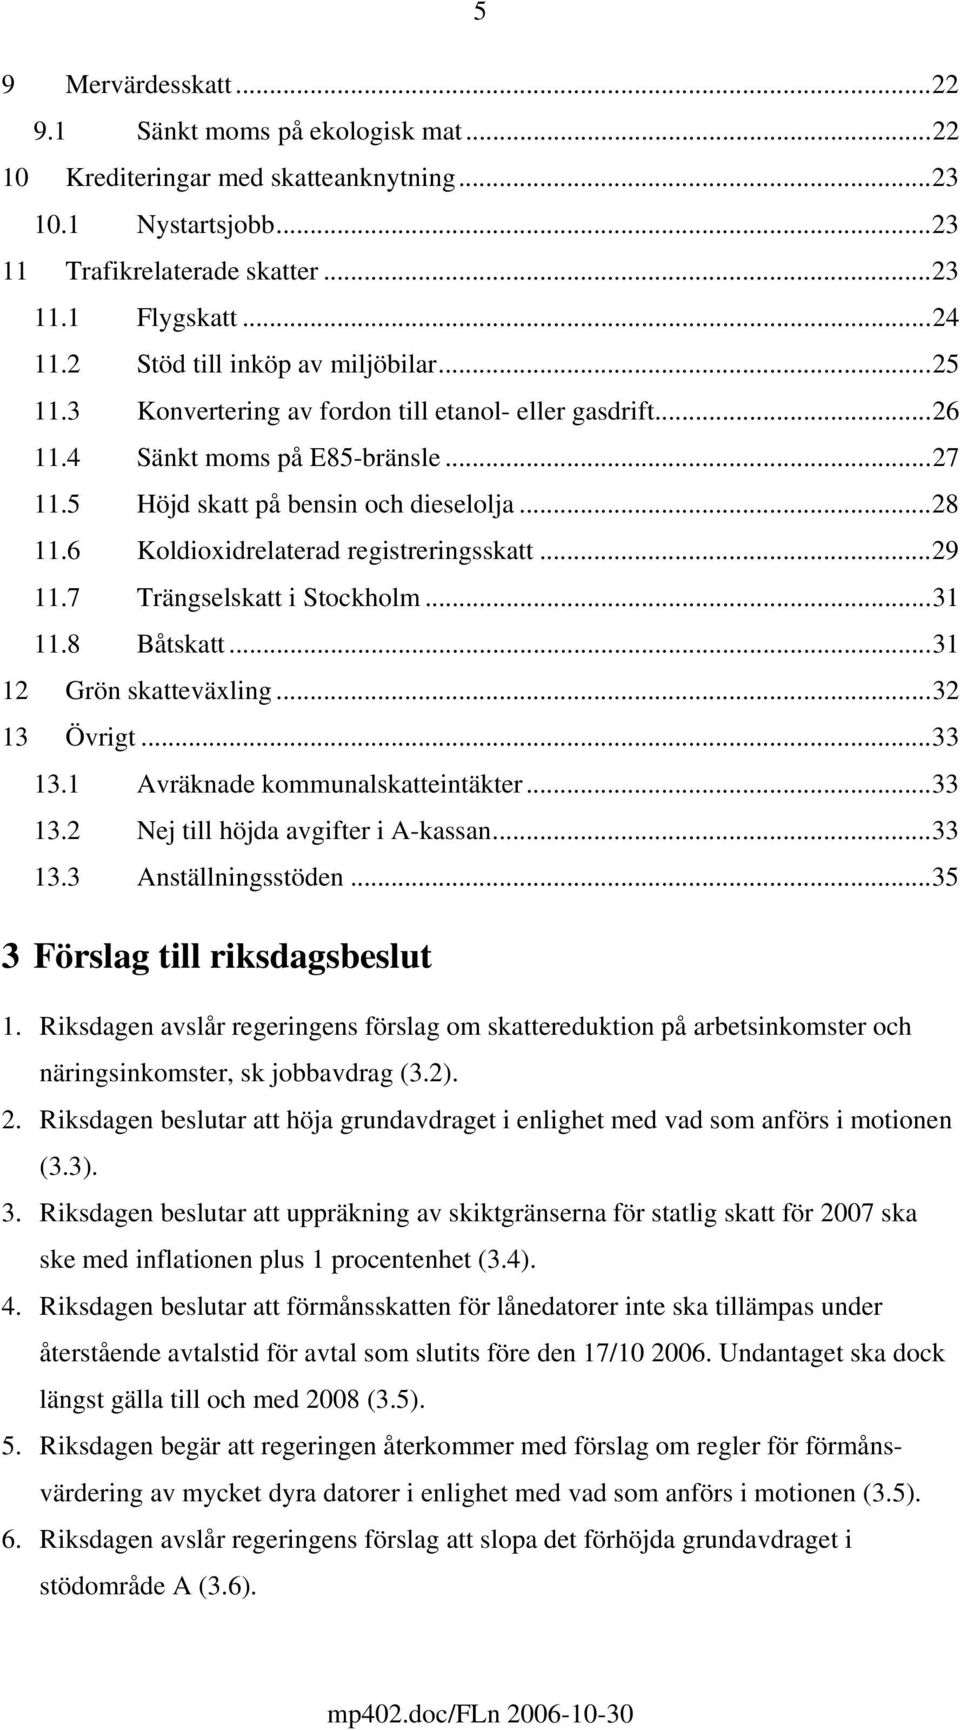 6 Koldioxidrelaterad registreringsskatt...29 11.7 Trängselskatt i Stockholm...31 11.8 Båtskatt...31 12 Grön skatteväxling...32 13 Övrigt...33 13.1 Avräknade kommunalskatteintäkter...33 13.2 Nej till höjda avgifter i A-kassan.